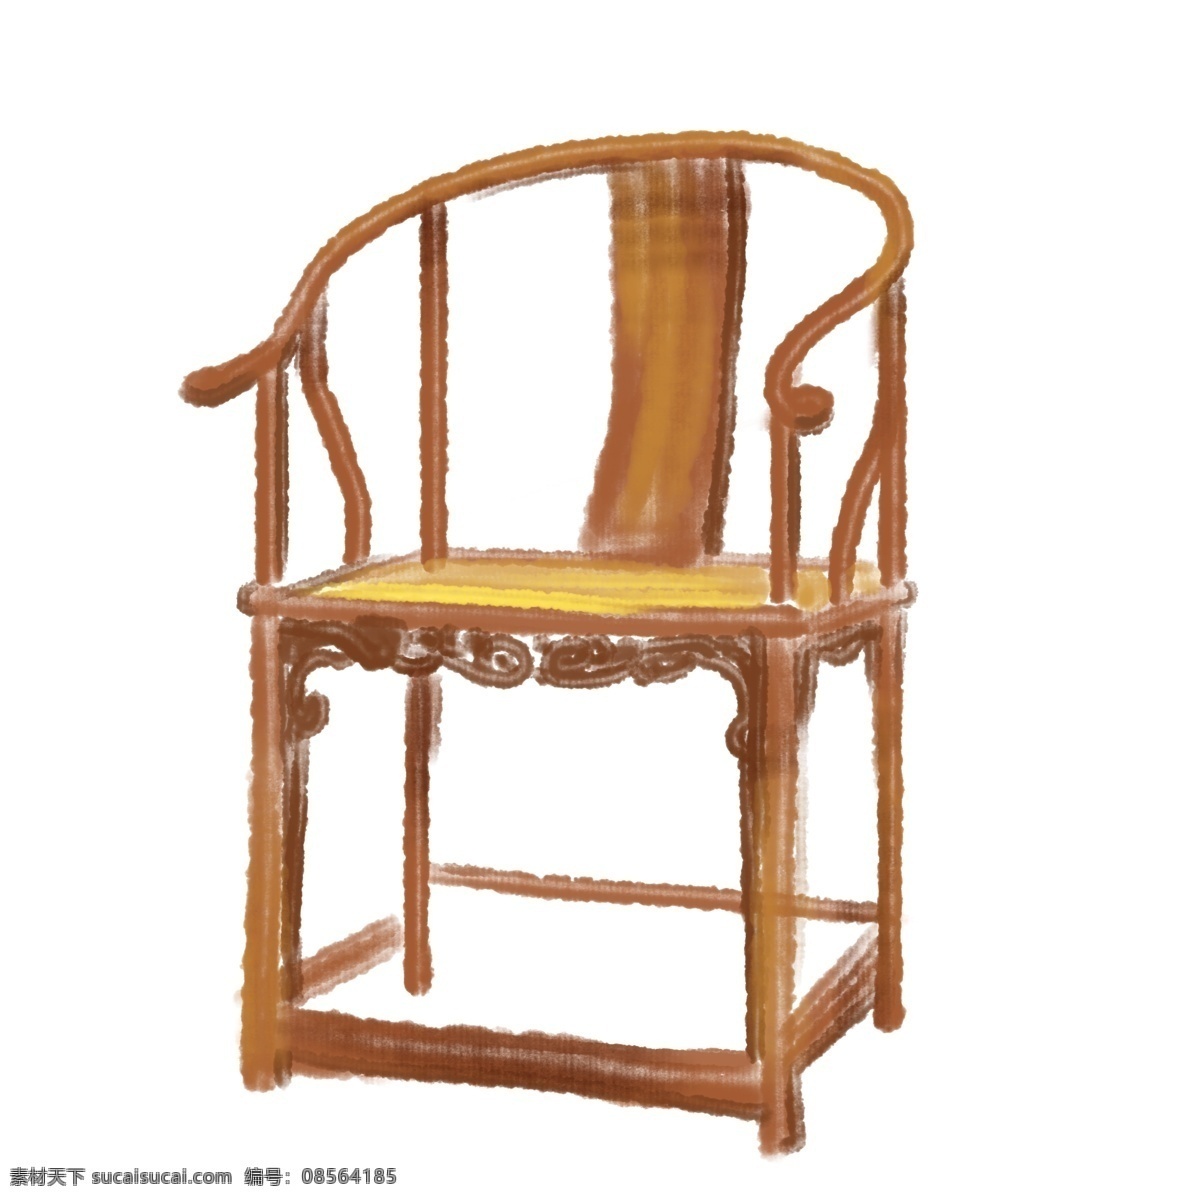 手绘 古代 椅子 插画 古代椅子 中国风 复古风 手绘椅子 靠背椅子 复古椅子 椅子插画 椅子插图